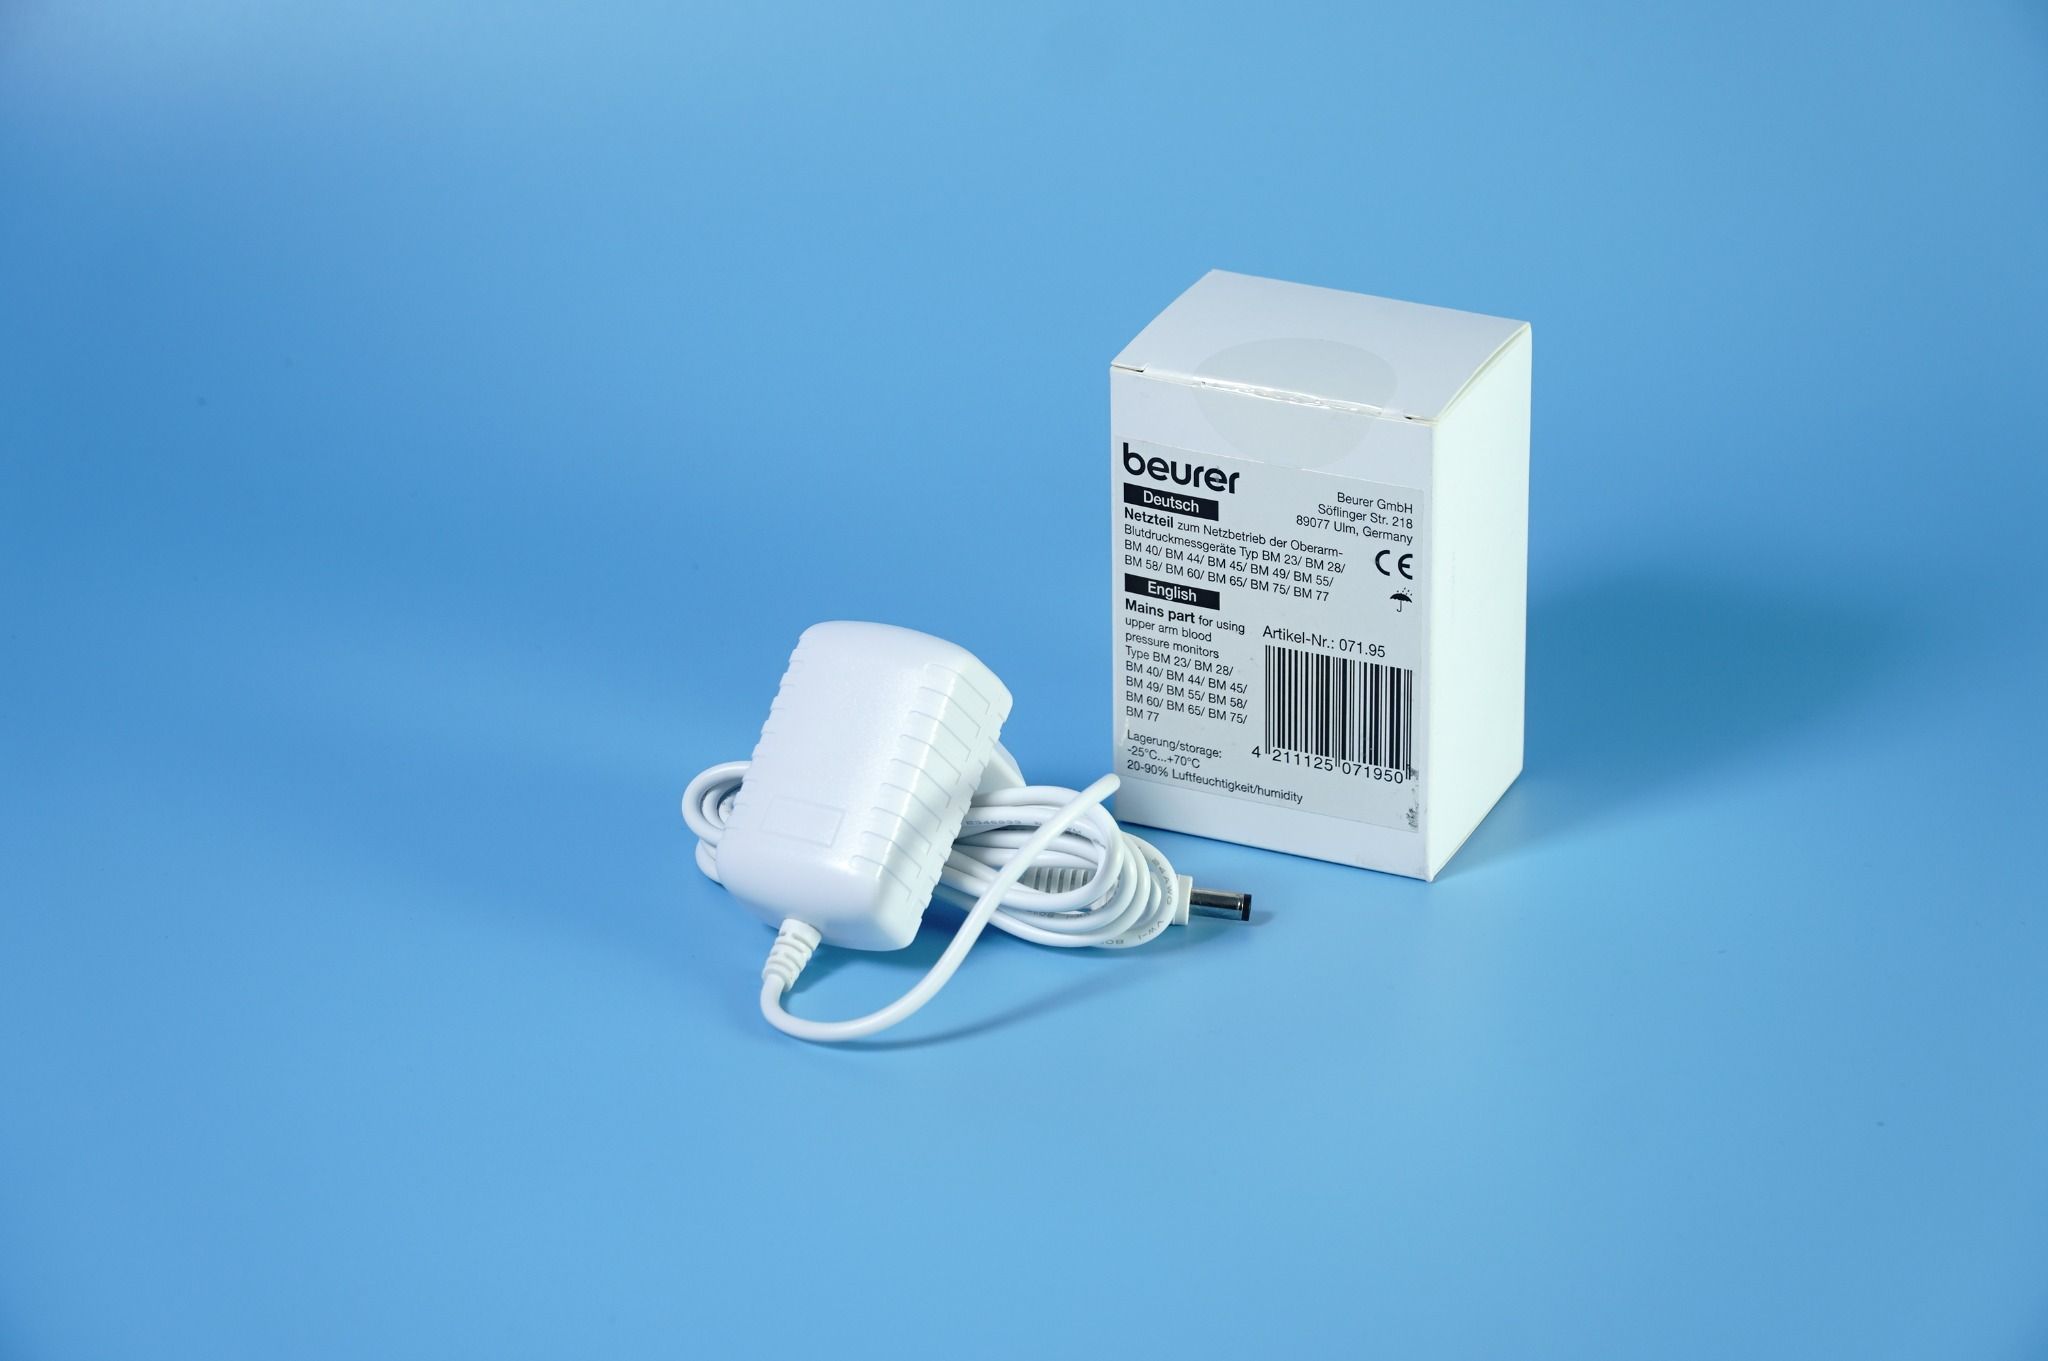  Củ sạc máy đo huyết áp BEURER - Bộ chuyển đổi điện áp máy đo huyết áp Beurer 